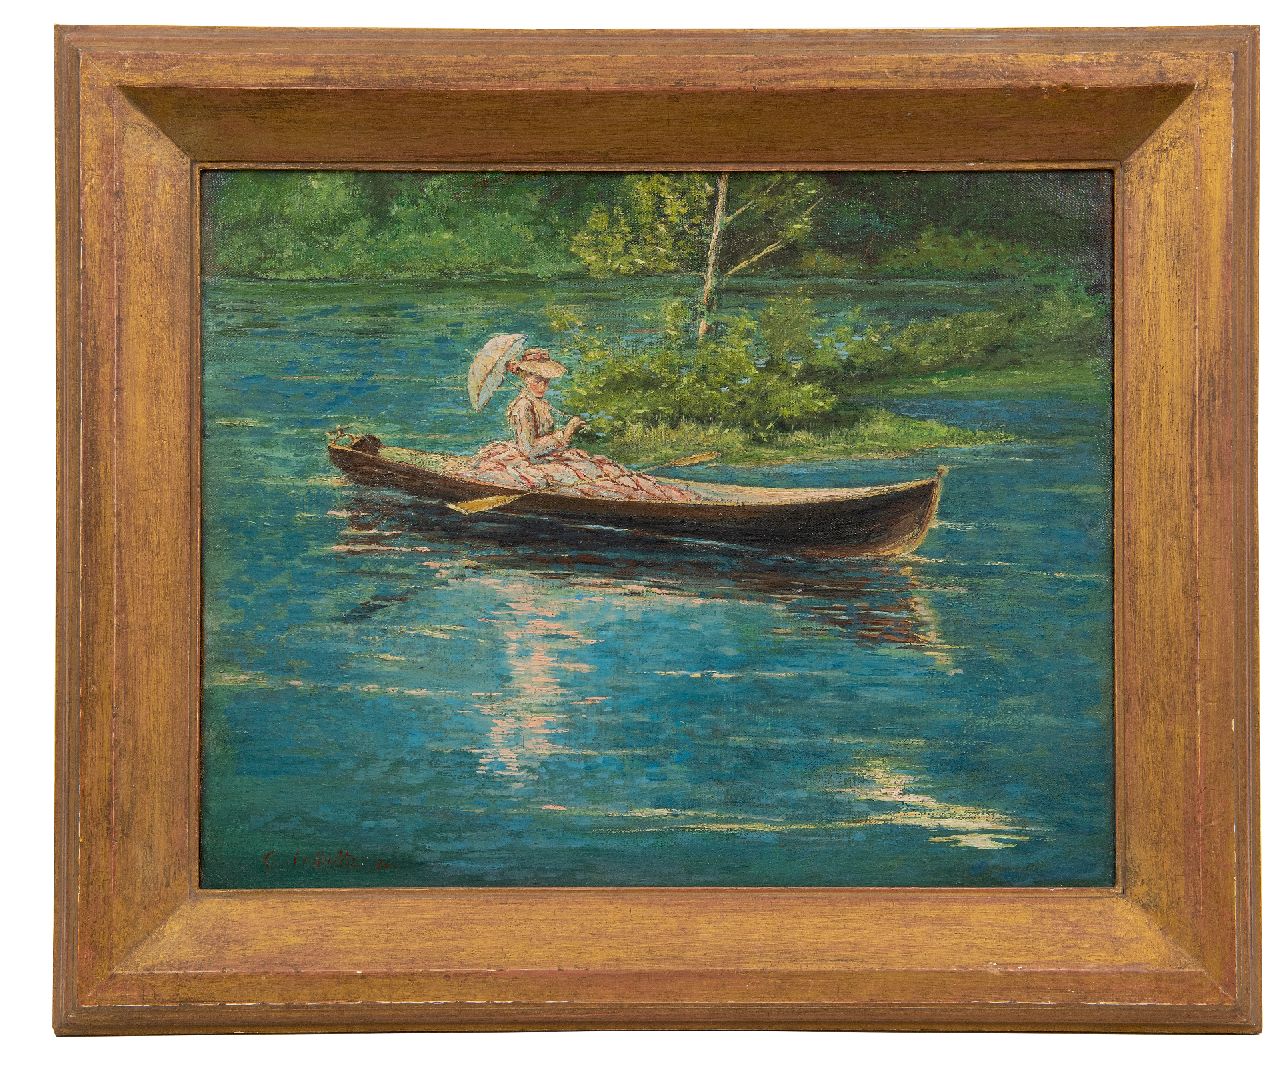 Schultz G.F.  | George F. Schultz | Schilderijen te koop aangeboden | Zomers vaartochtje op het meer, olieverf op doek 38,0 x 46,0 cm, gesigneerd linksonder en gedateerd '30